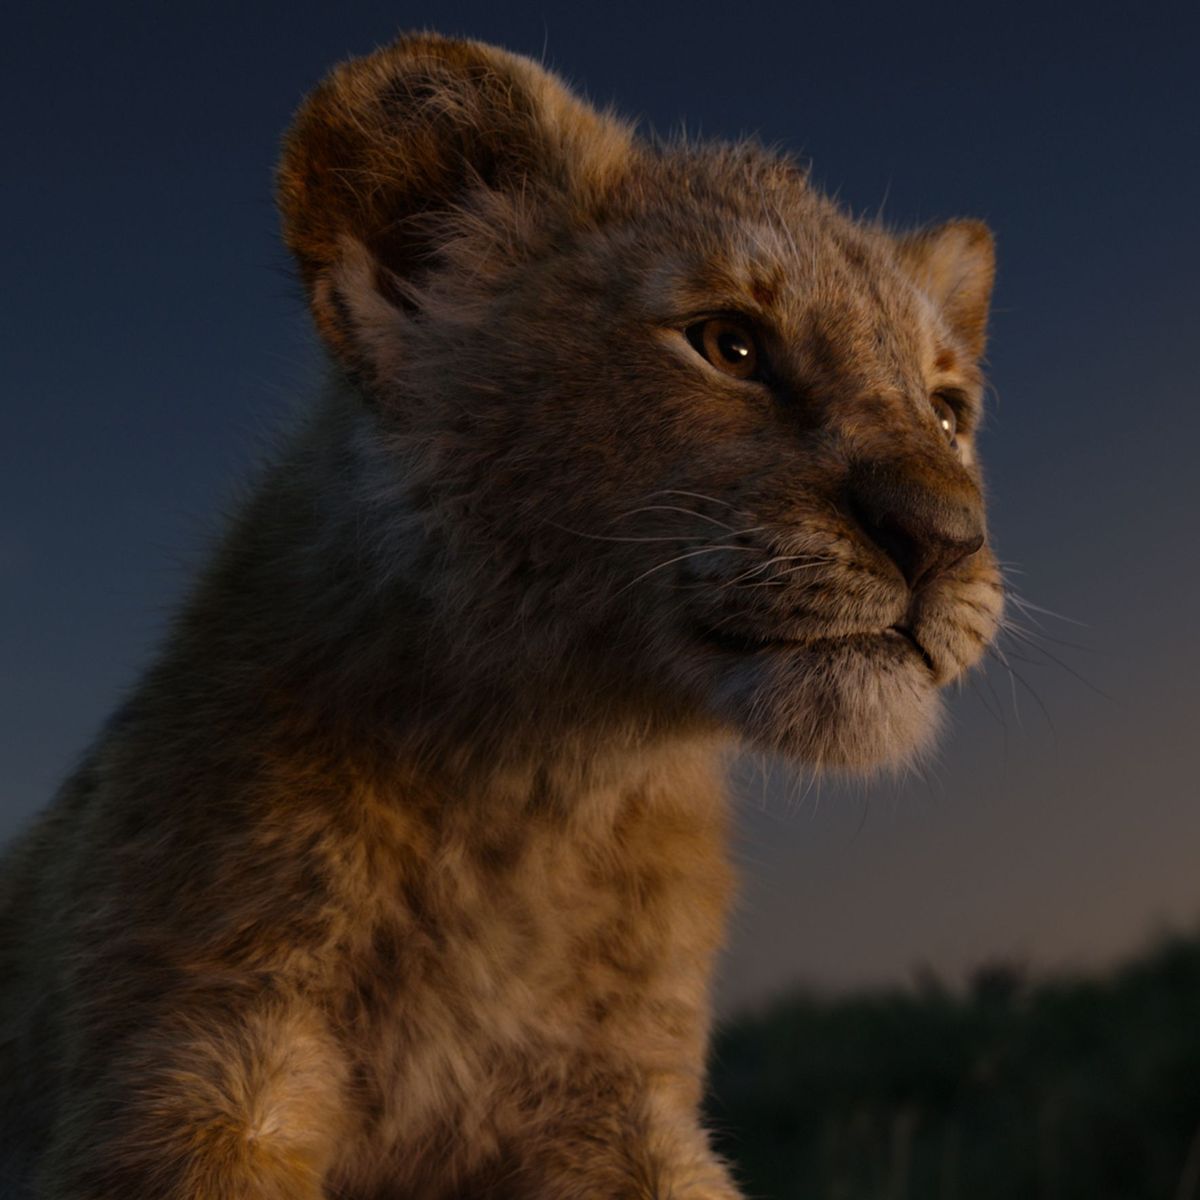  Löwen Hintergrundbild 1200x1200. Der König der Löwen (2019): Packend, aber unpolitisch- Filmkritik